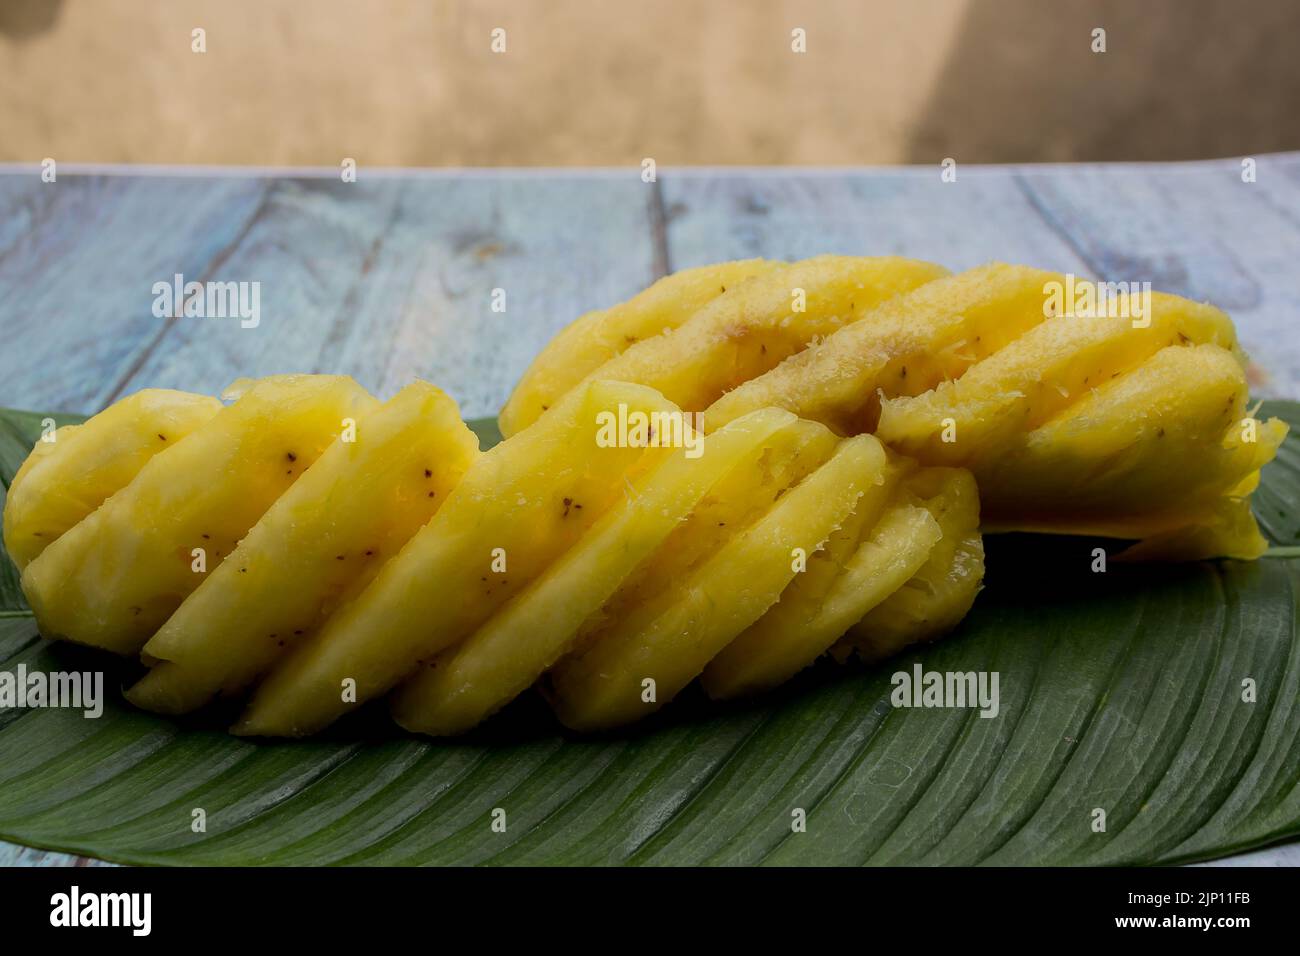 Zwei in Scheiben geschnittene gelbe Ananas auf Blatt serviert Stockfoto